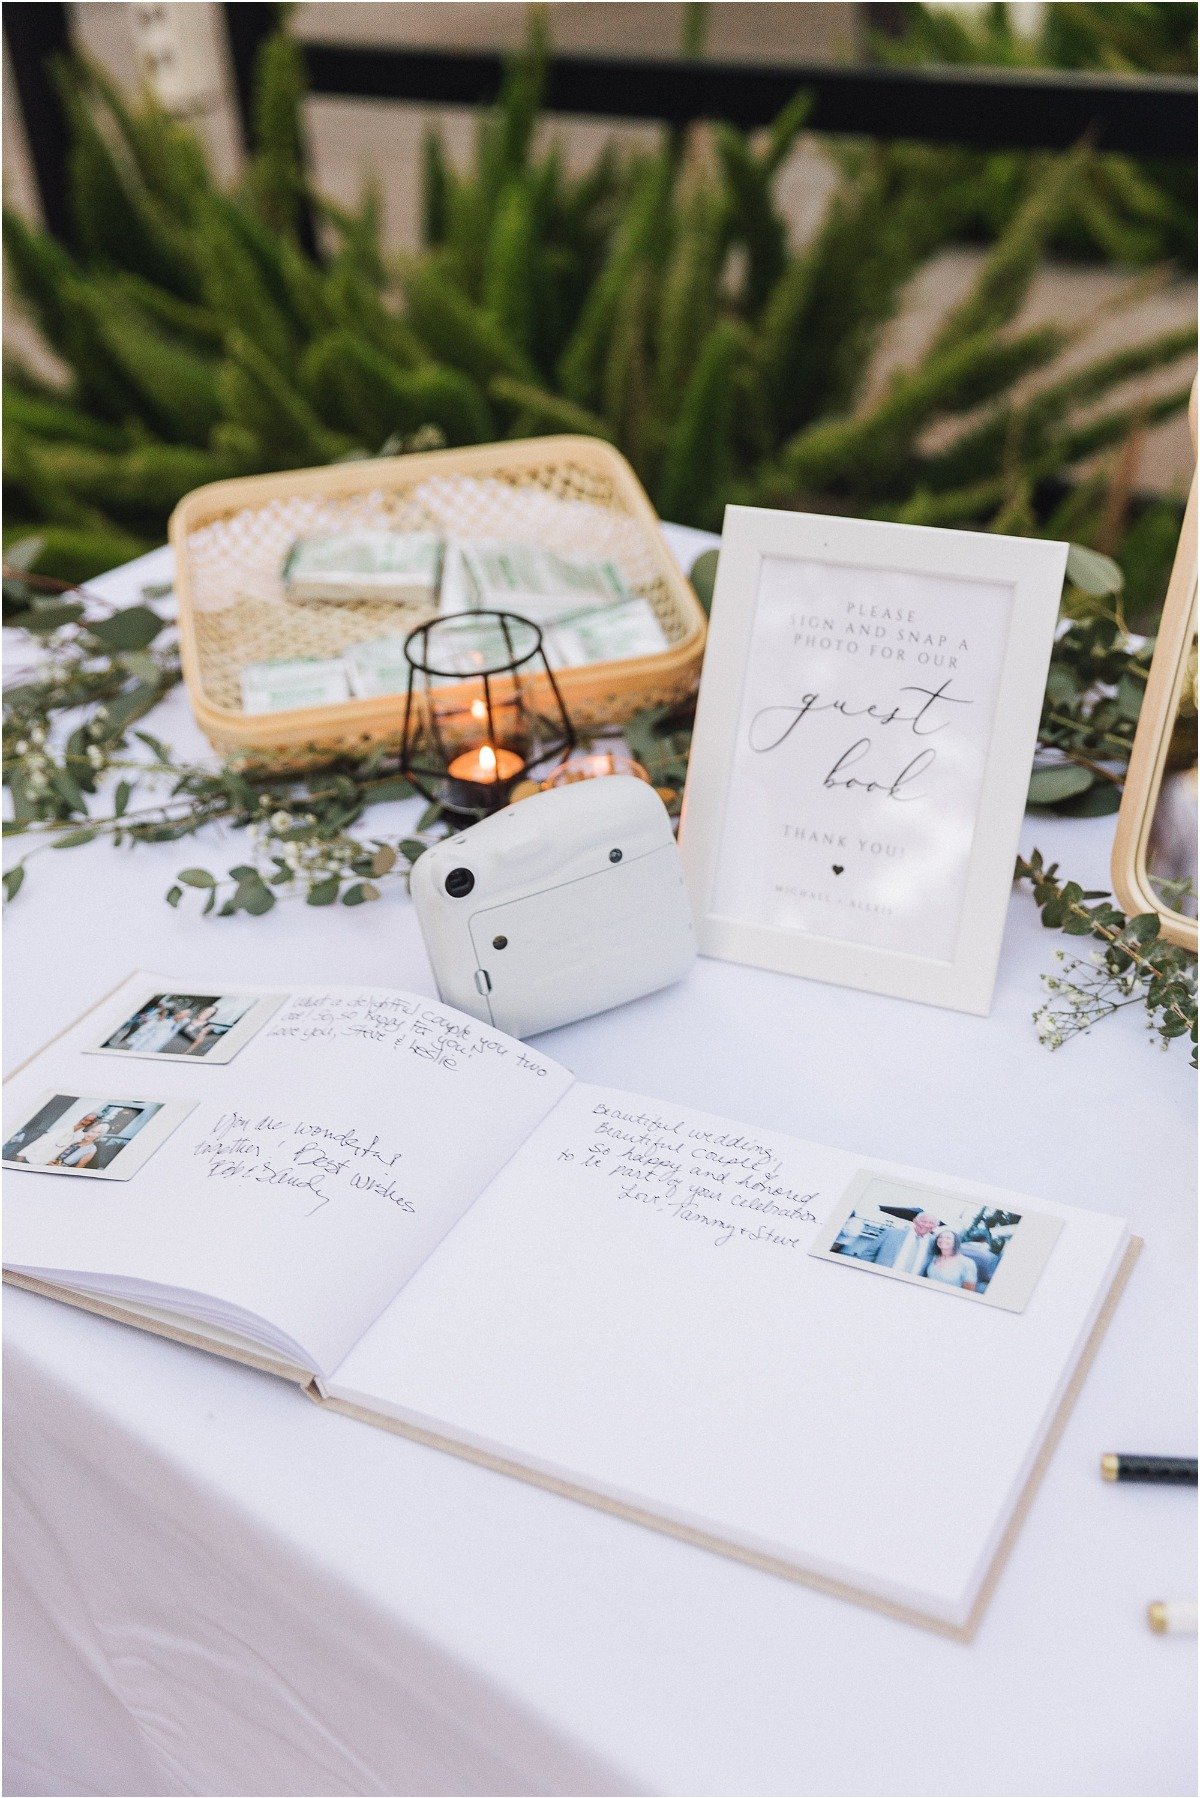 wedding guest book ideas